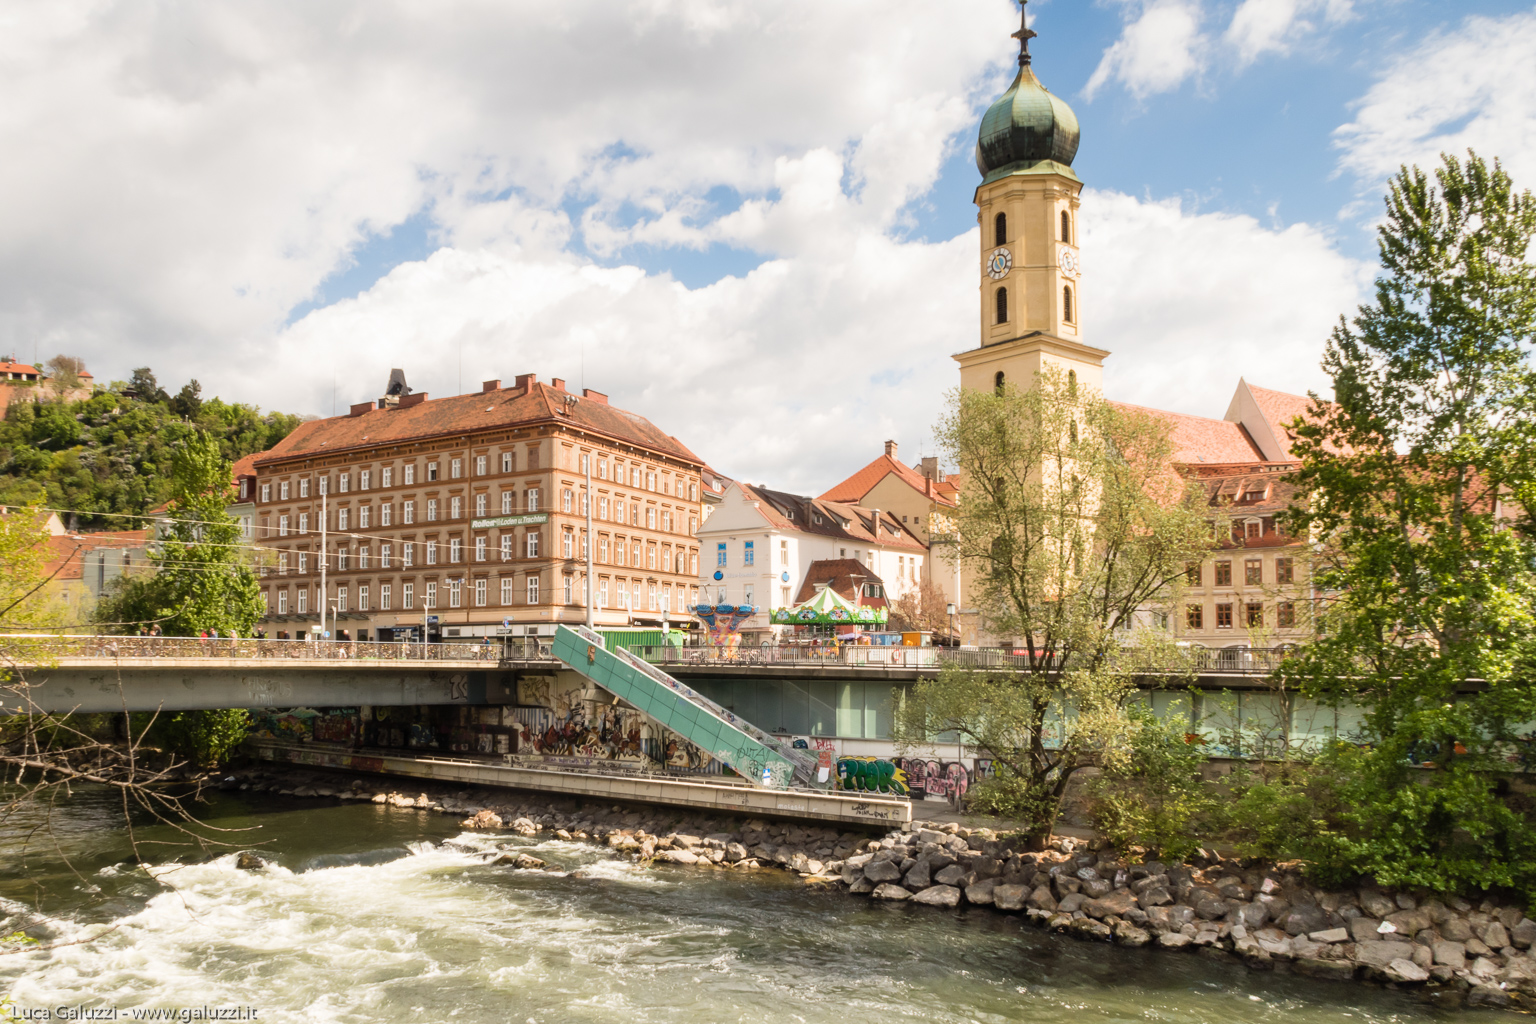 Graz è il capoluogo del Land della Stiria in Austria